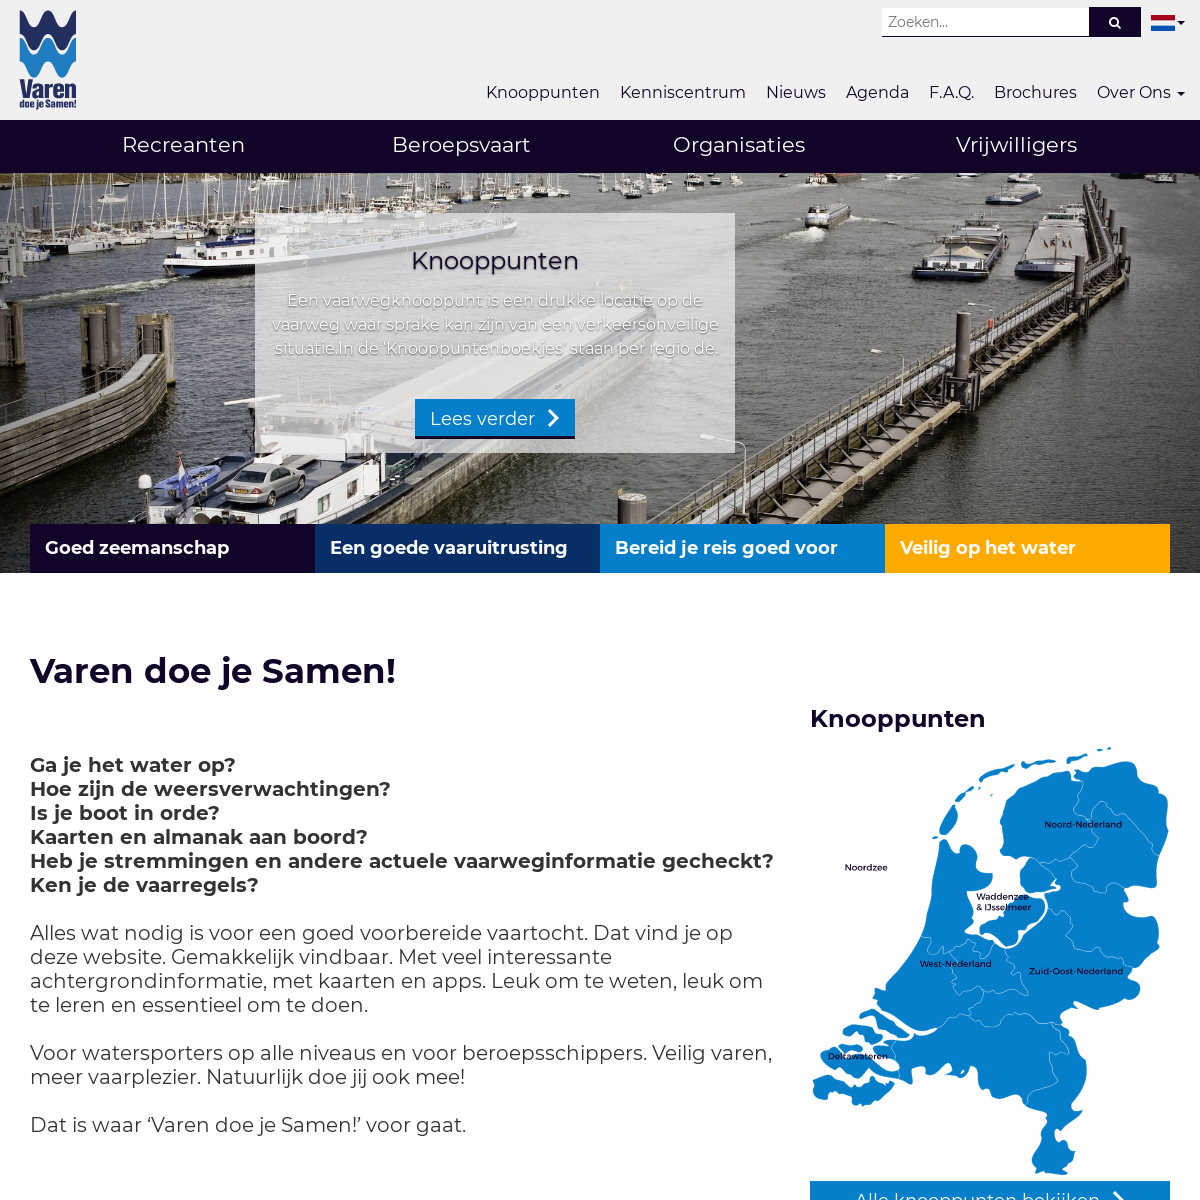 A complete backup of varendoejesamen.nl